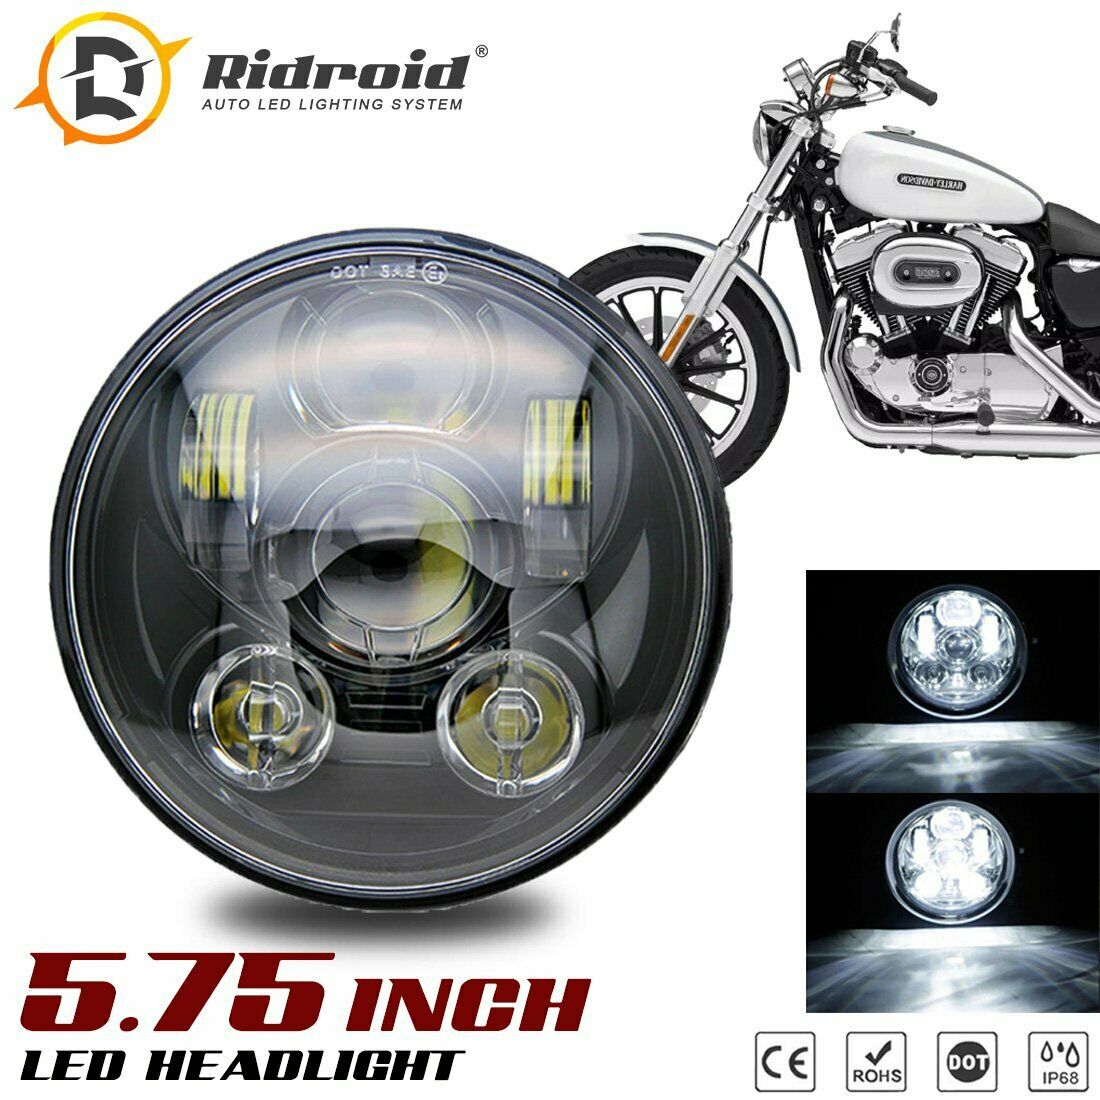 5.75" 5-3/4" LED Headlight BLK For Harley Davidson Breakout cross bone Blackline 